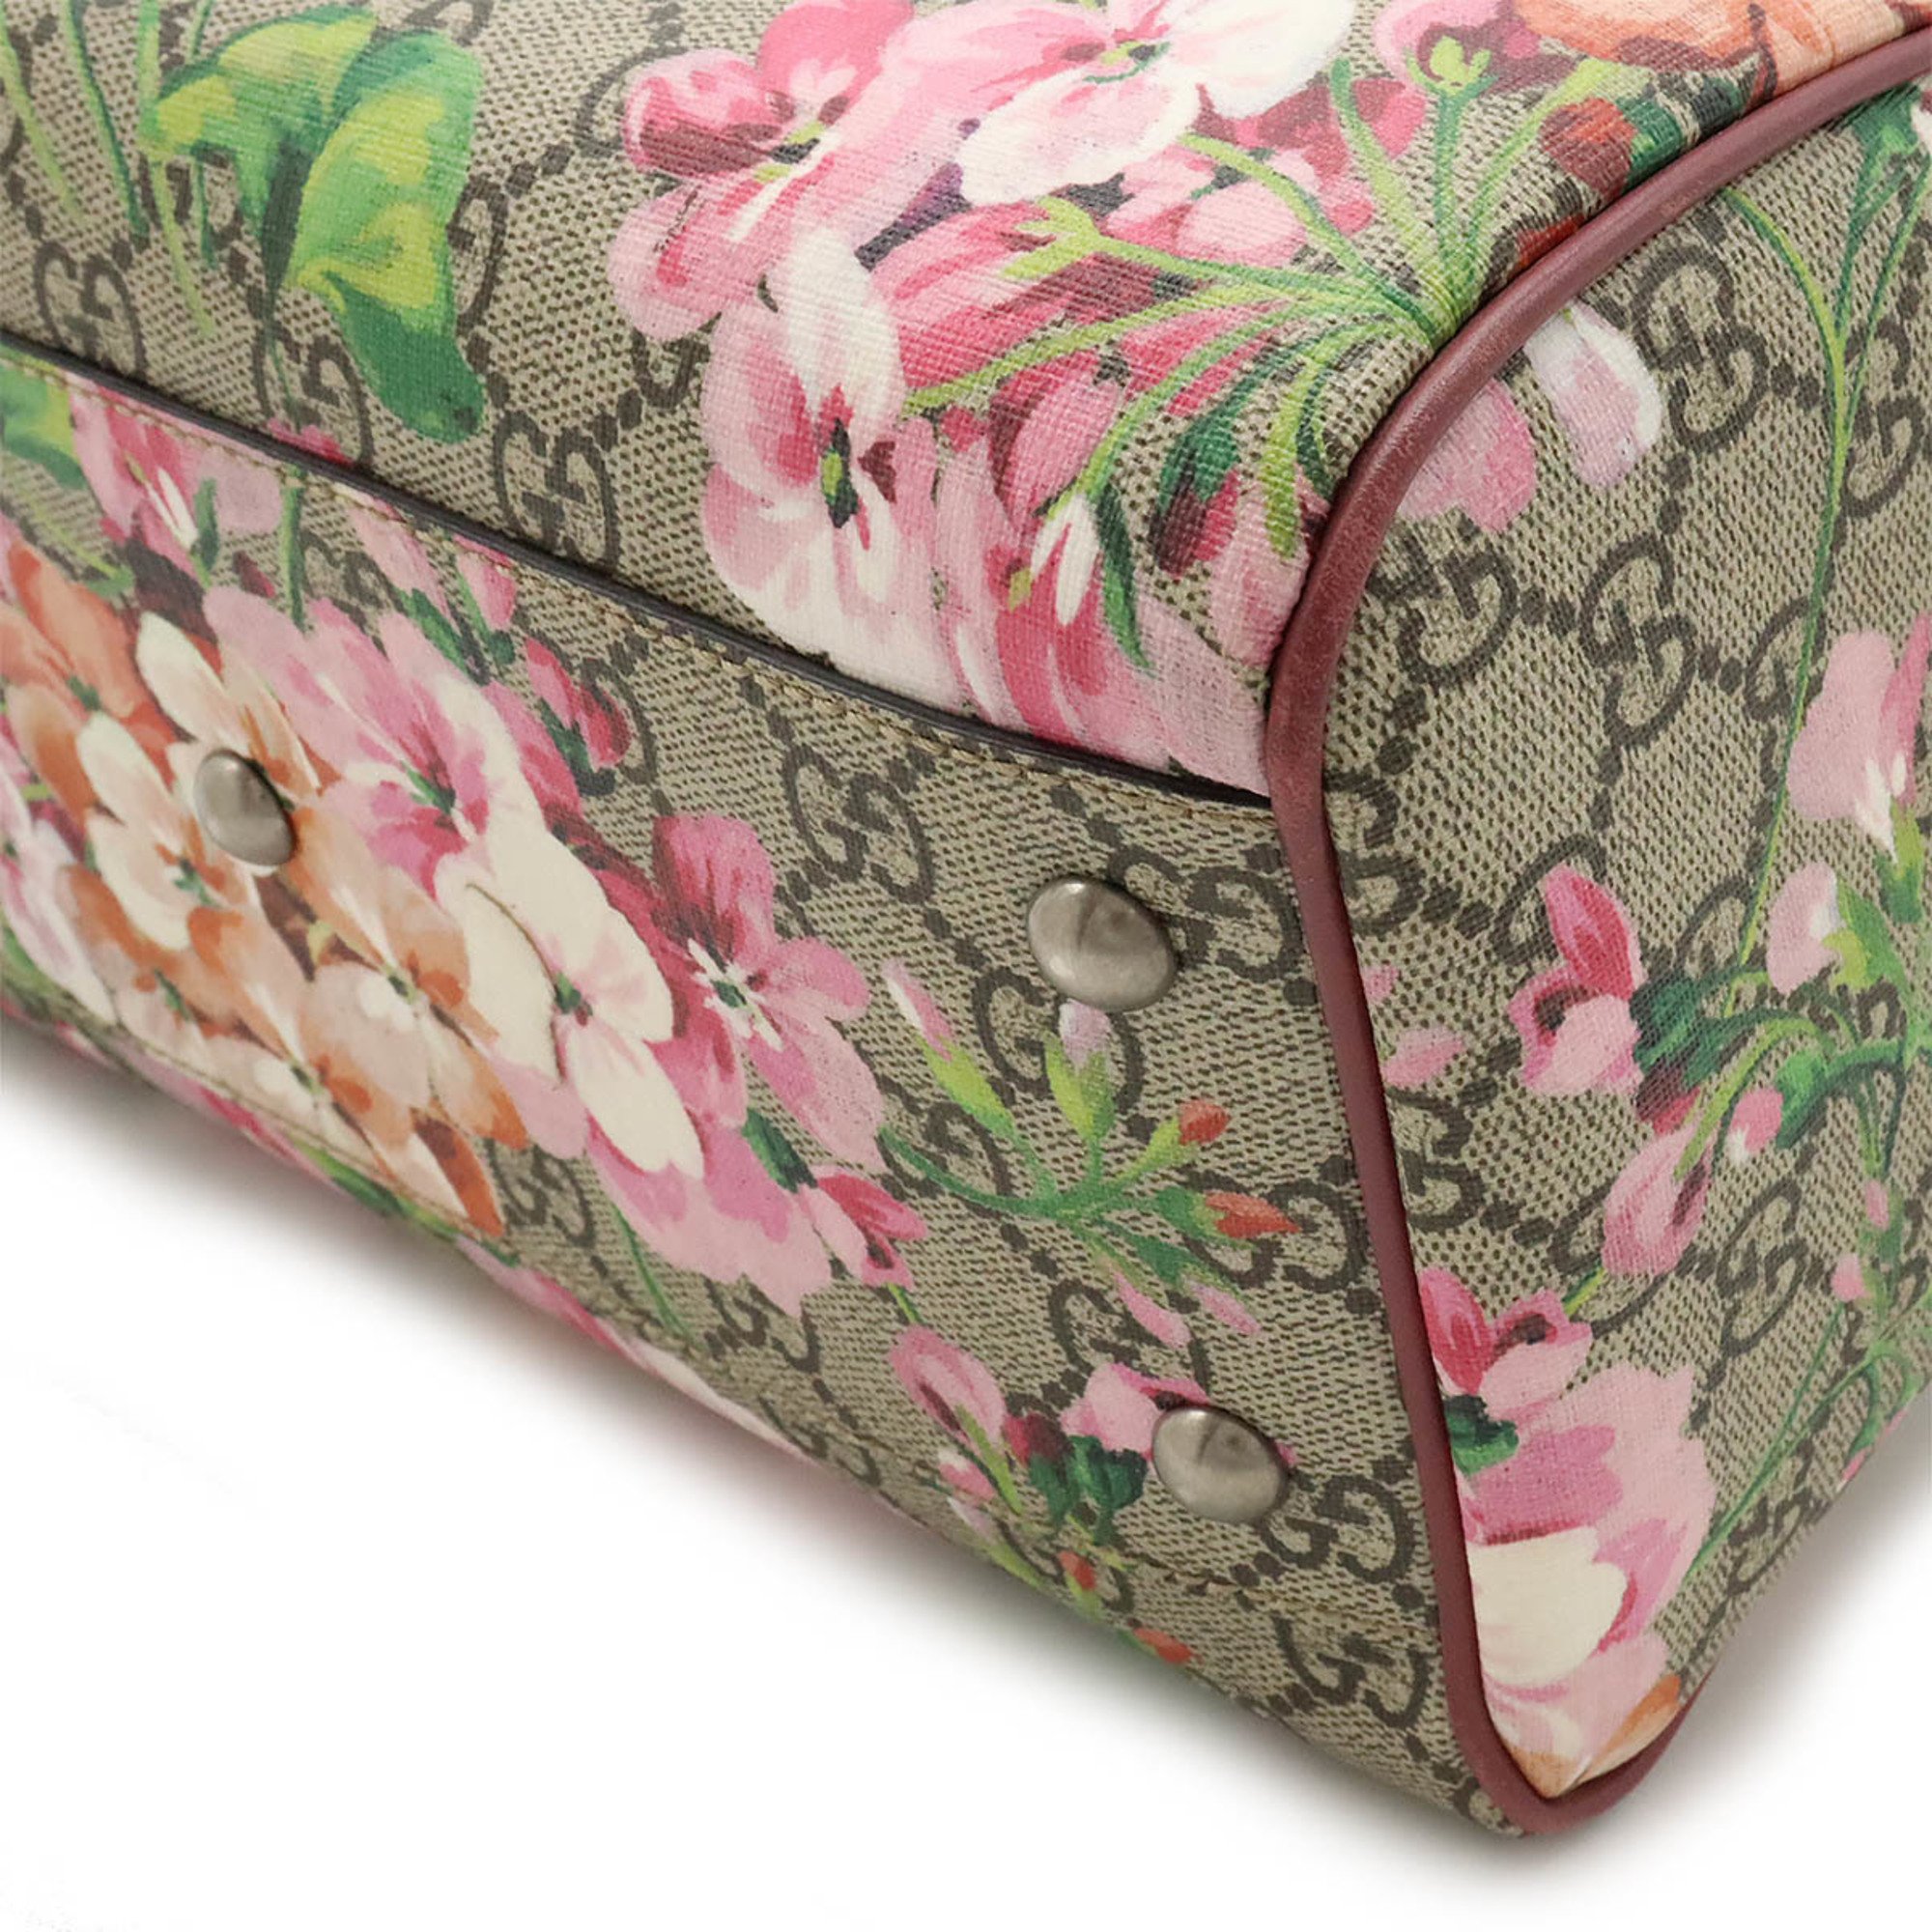 GUCCI GG Blooms Handbag Boston Bag Shoulder PVC Leather Flower Beige Pink Multi 409529